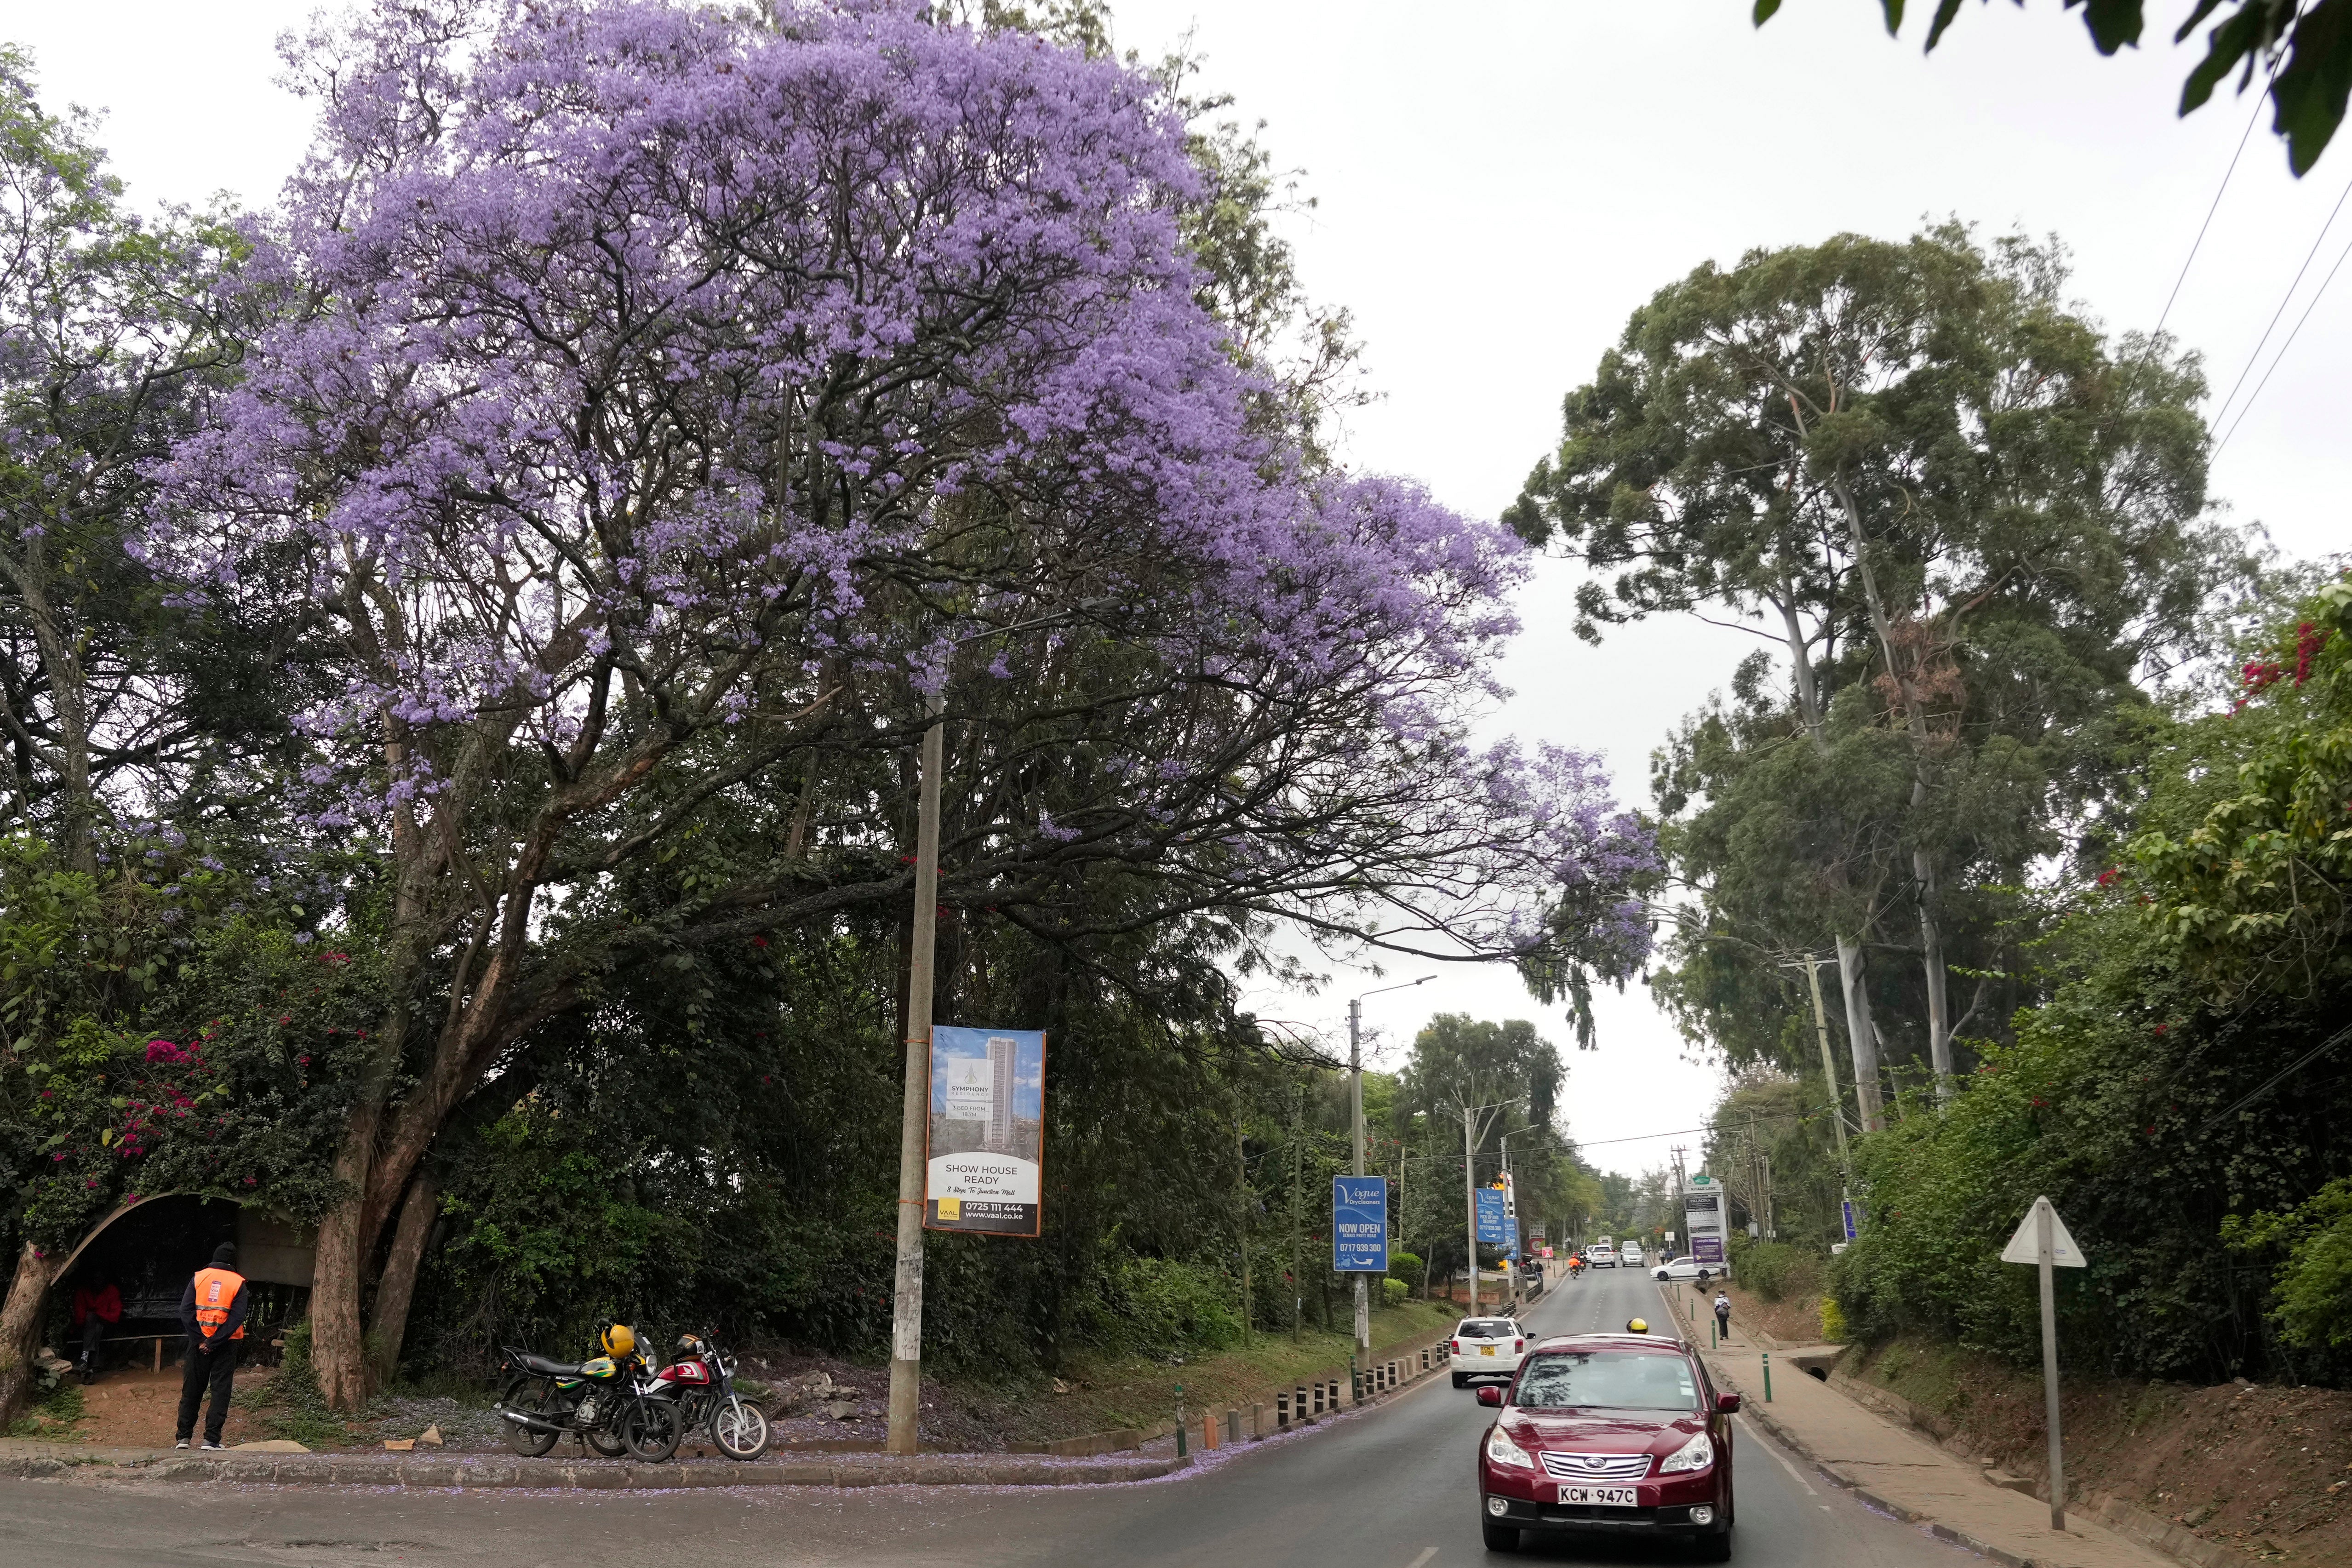 <p>A Jacaranda tree in bloom in Nairobi, Kenya</p>